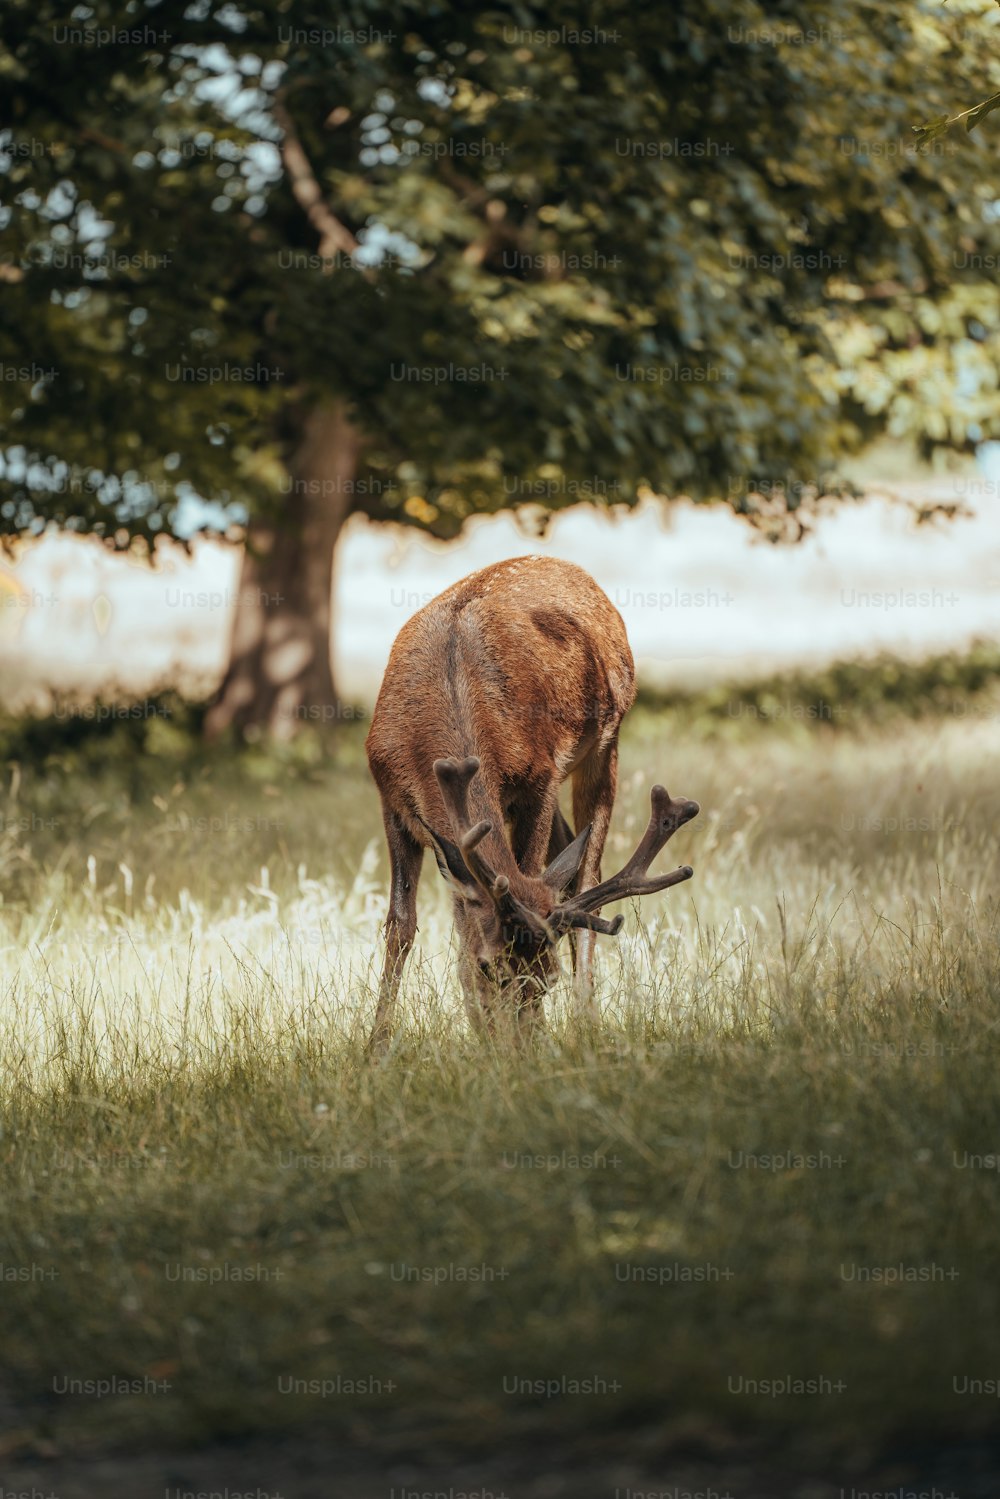 Un ciervo comiendo hierba en un campo junto a un árbol